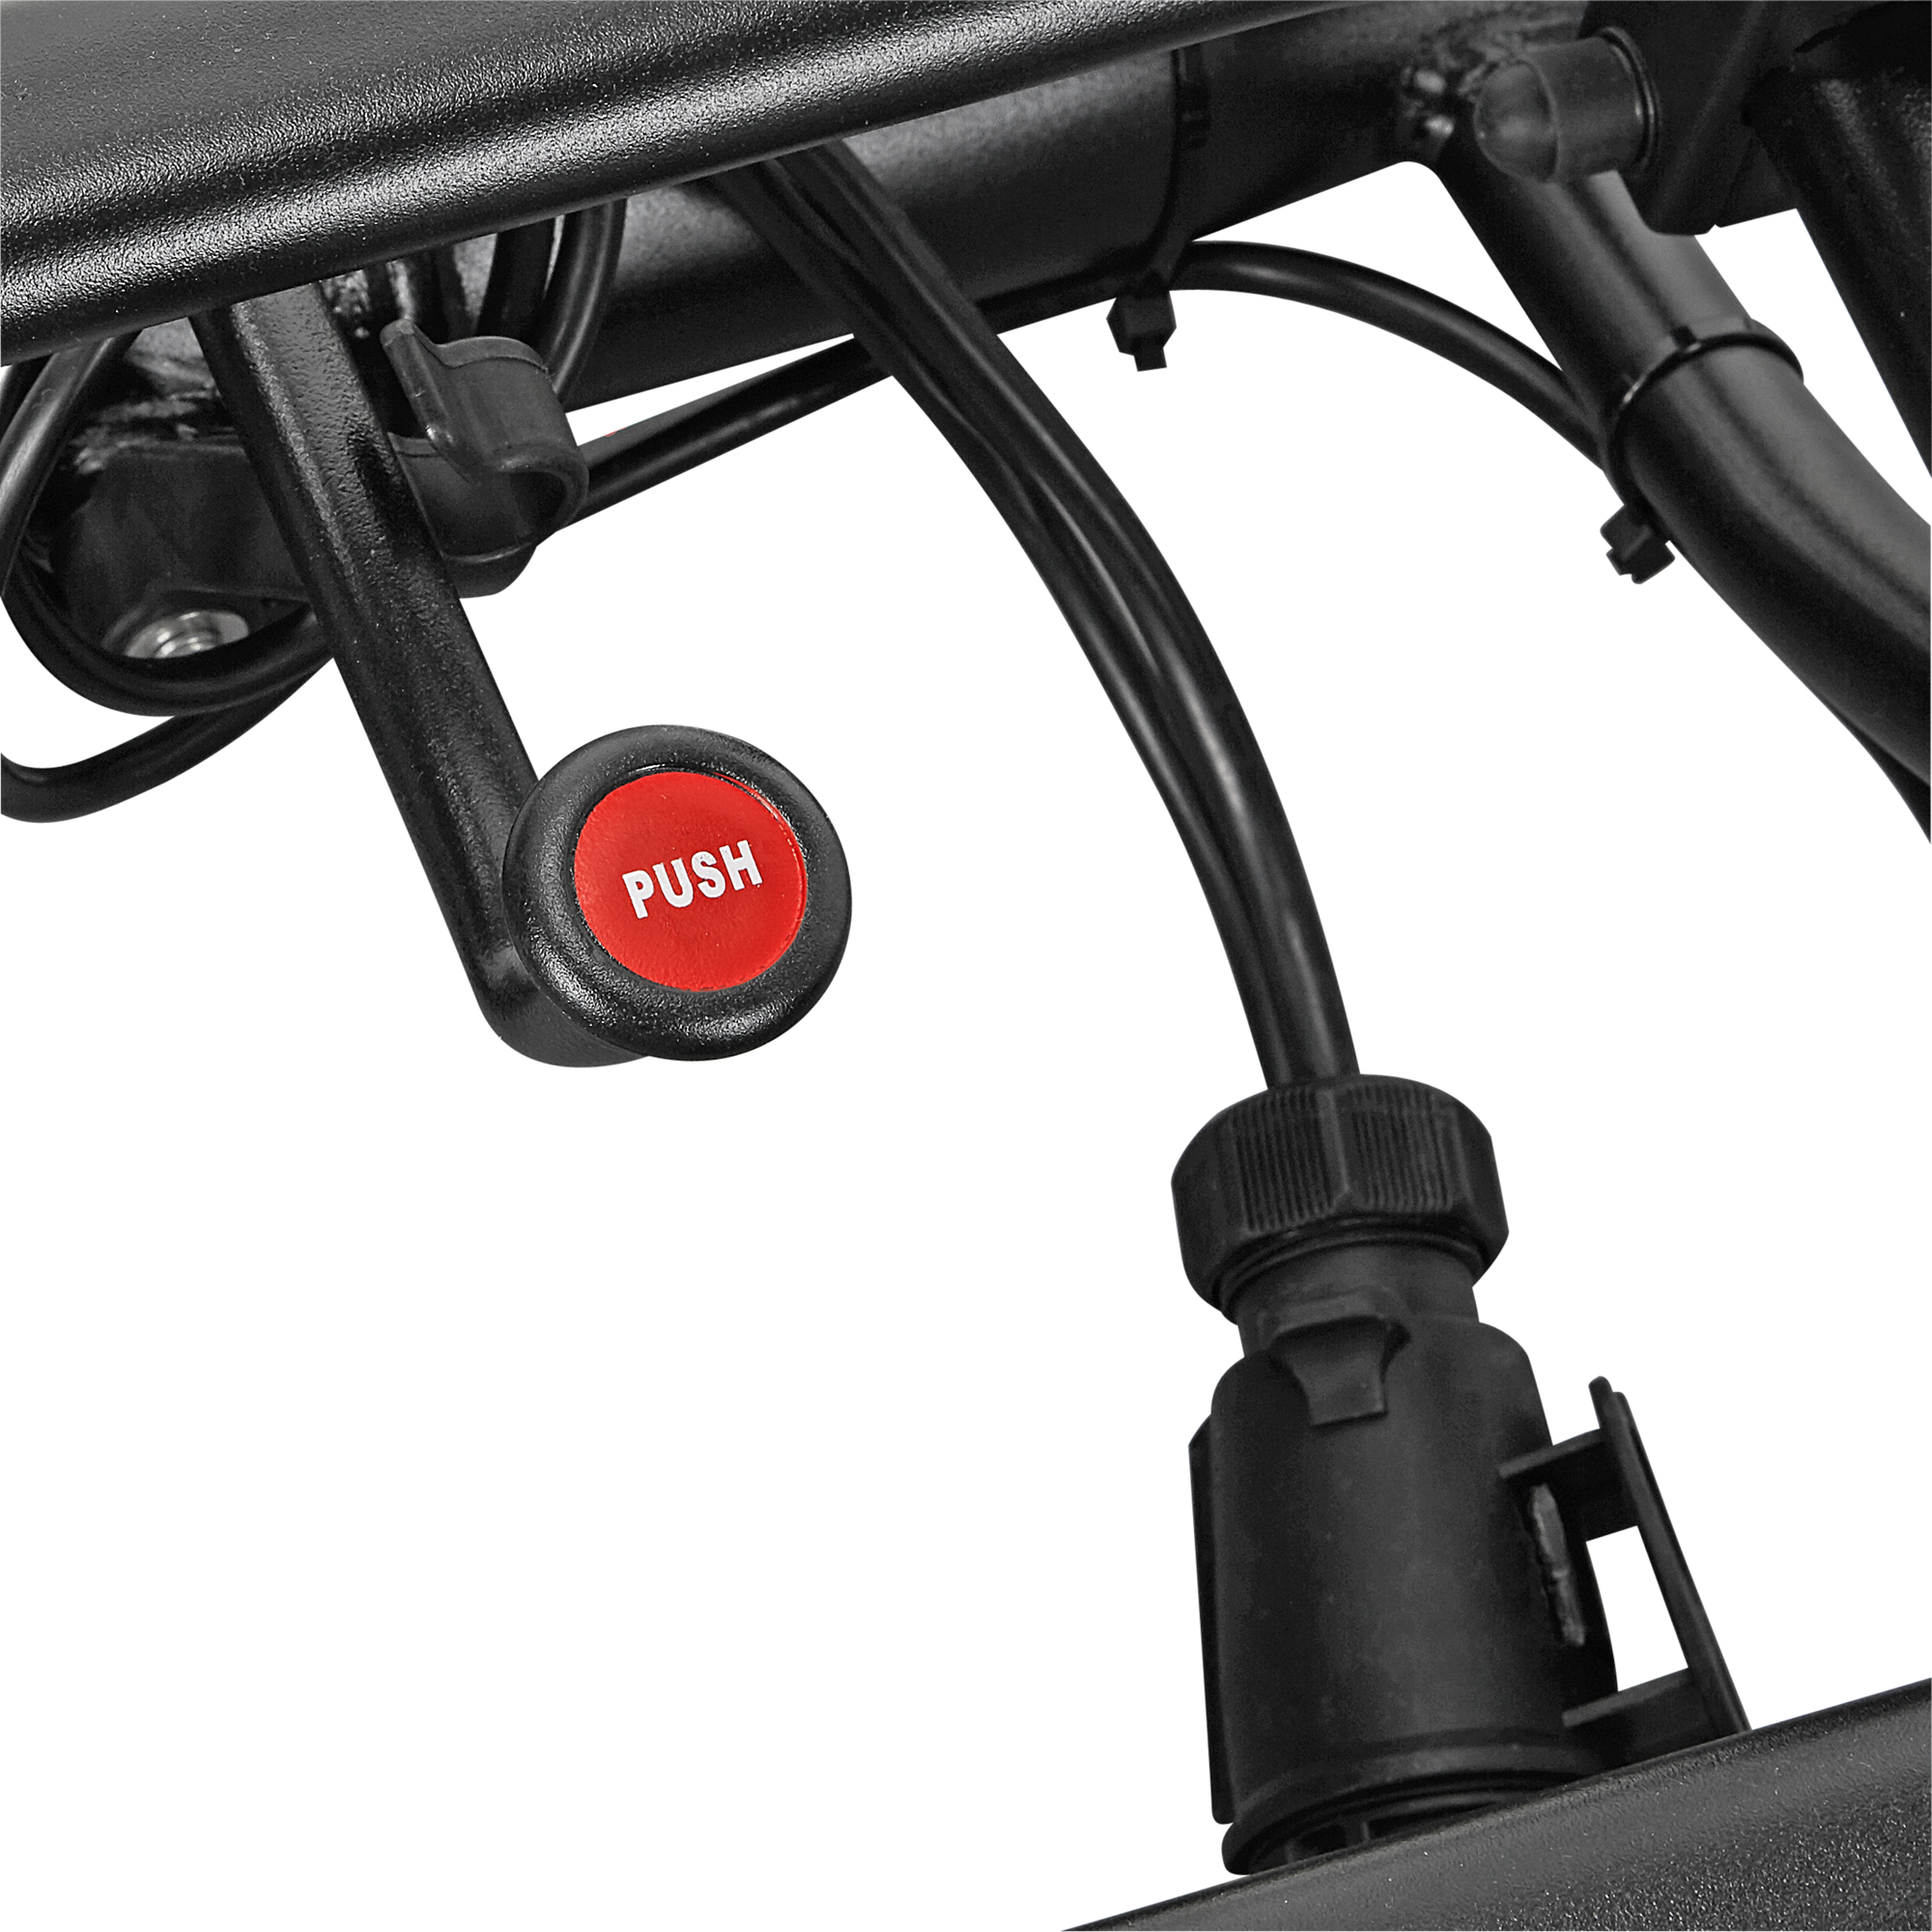 PKW-Fahrradträger 'Hawk' 2 Fahrräder + product picture